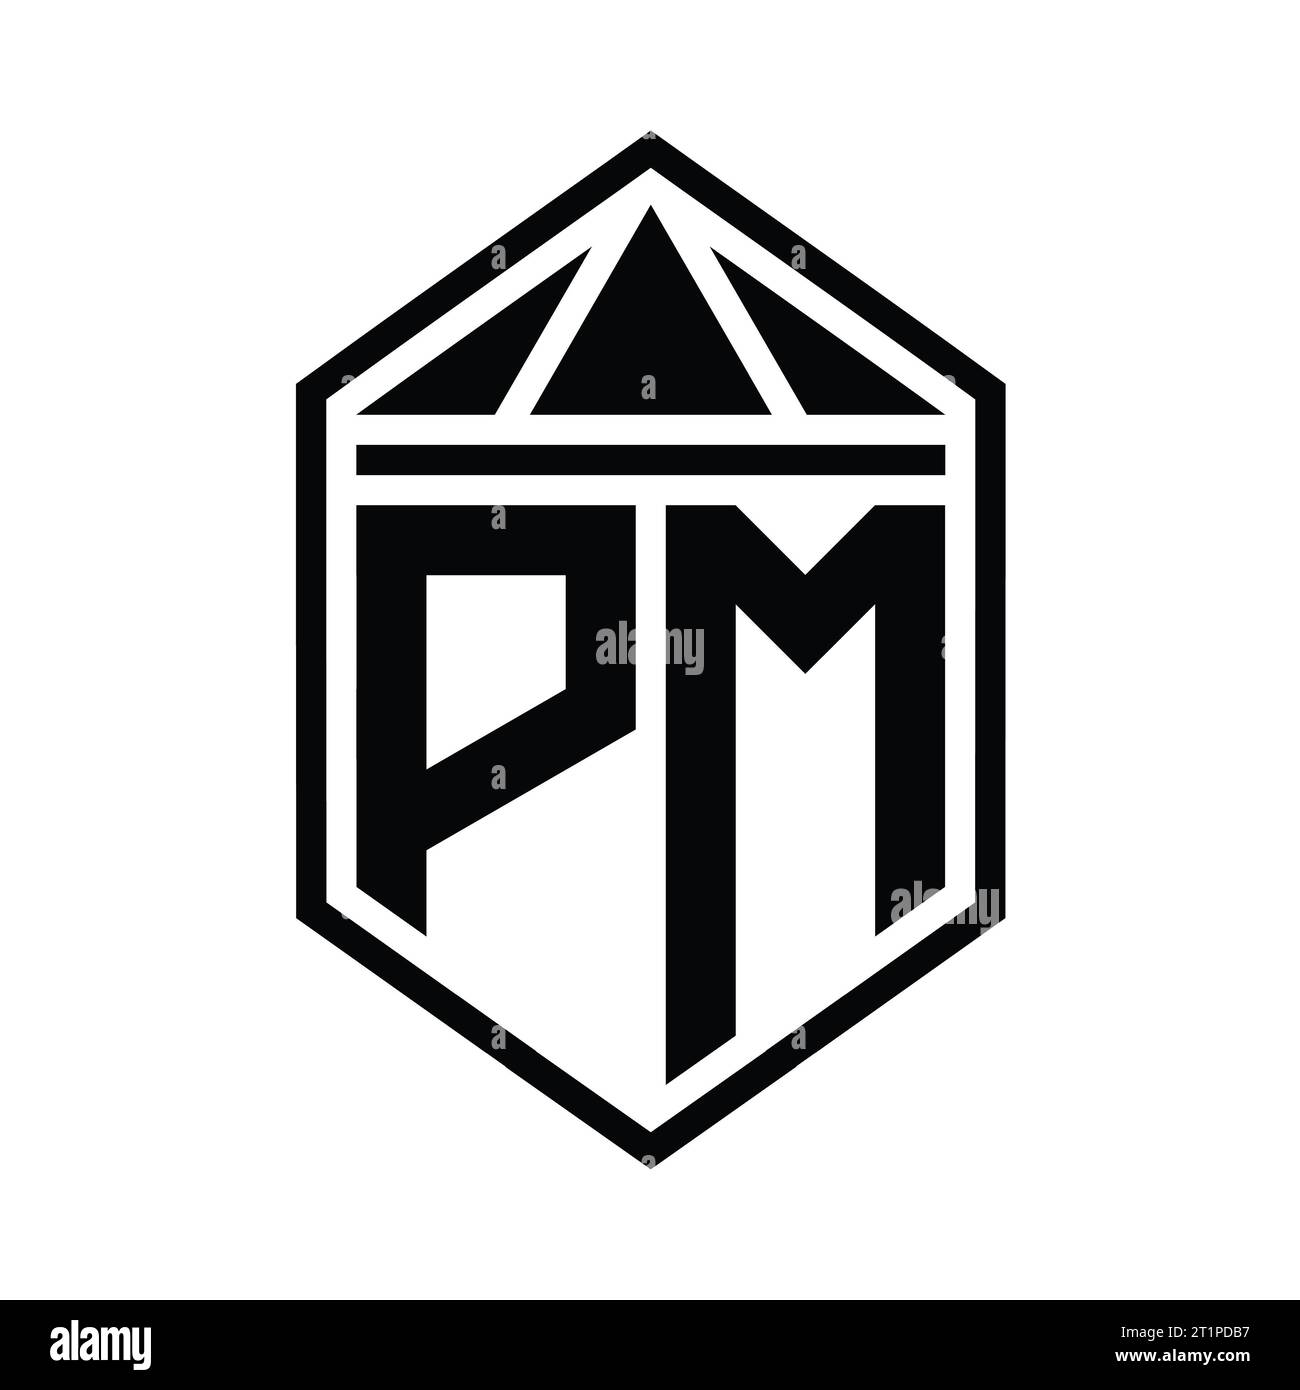 Pm initial letter gold calligraphic feminine Vector Image